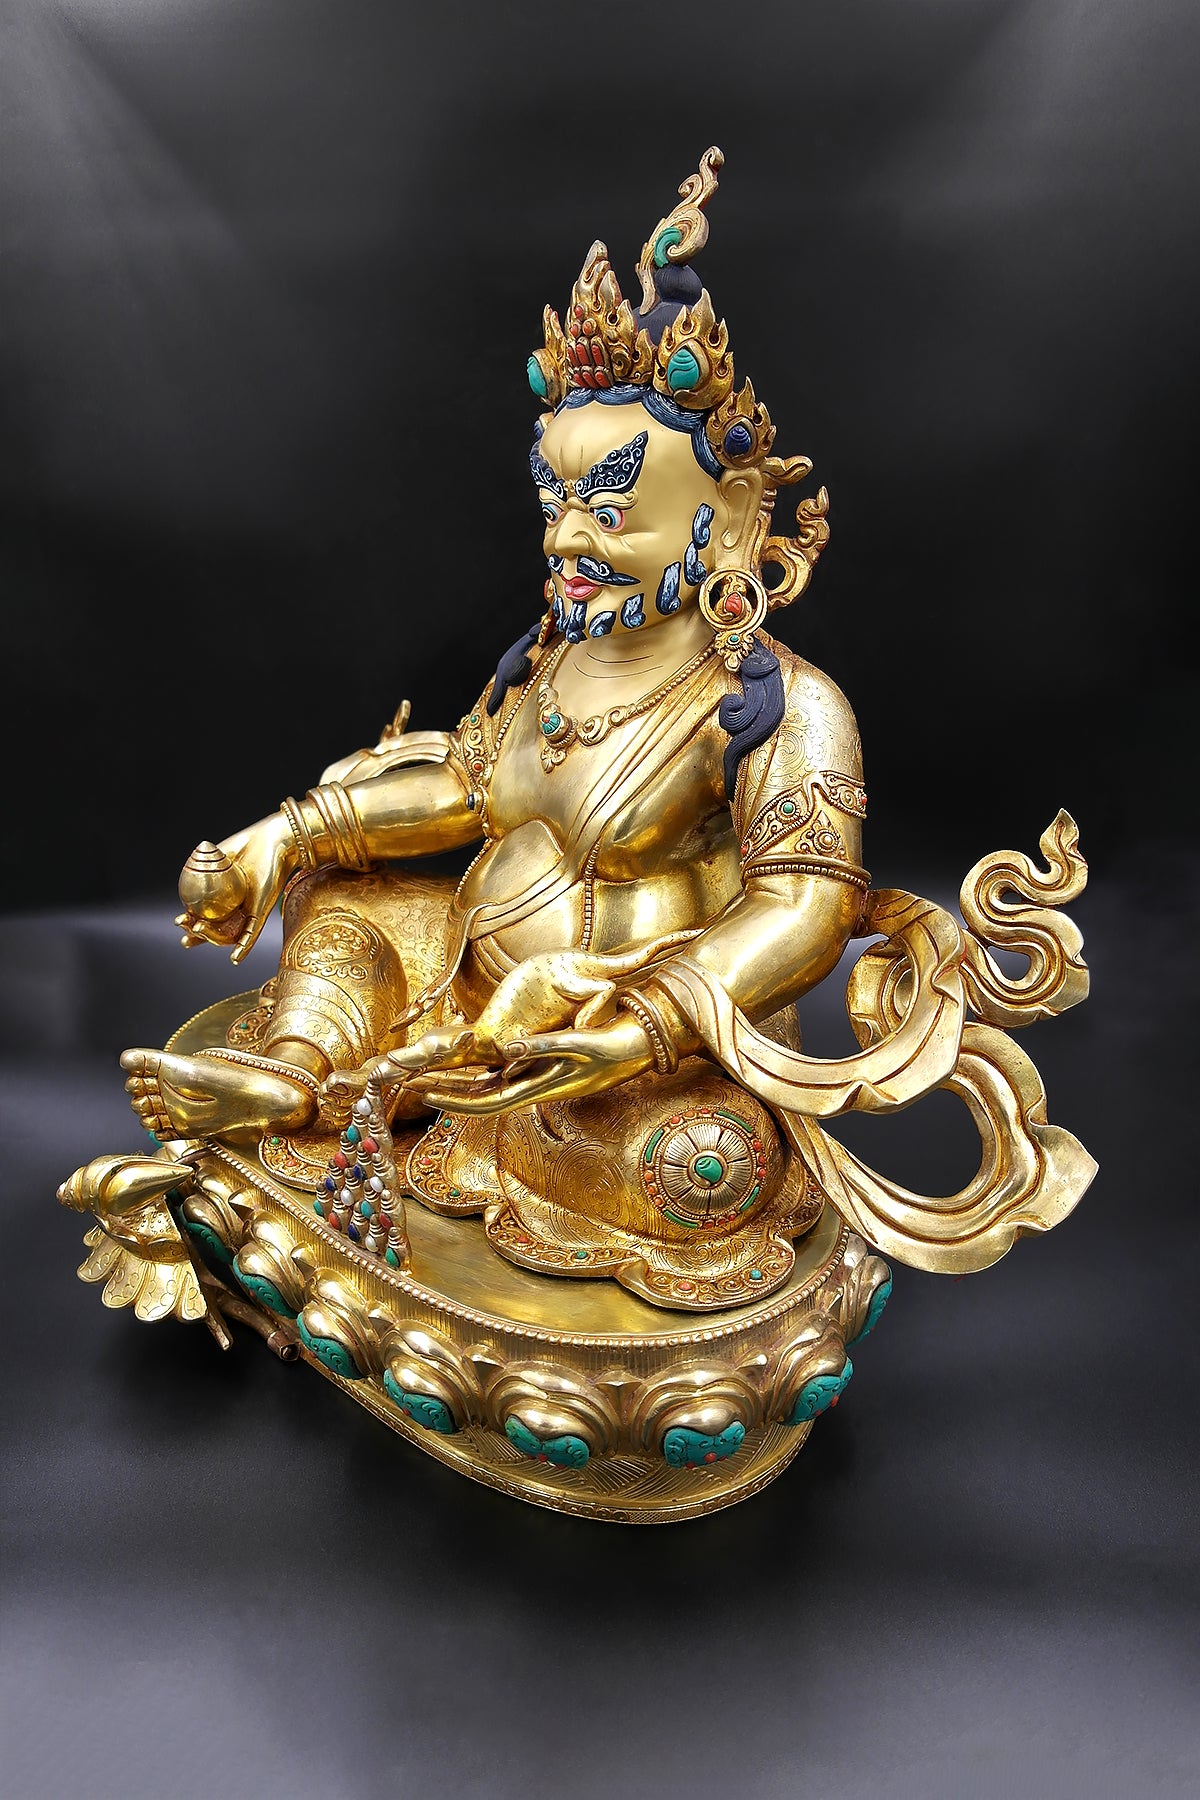 Jeweled Zambala Statue from Nepal, God of wealth, 16"